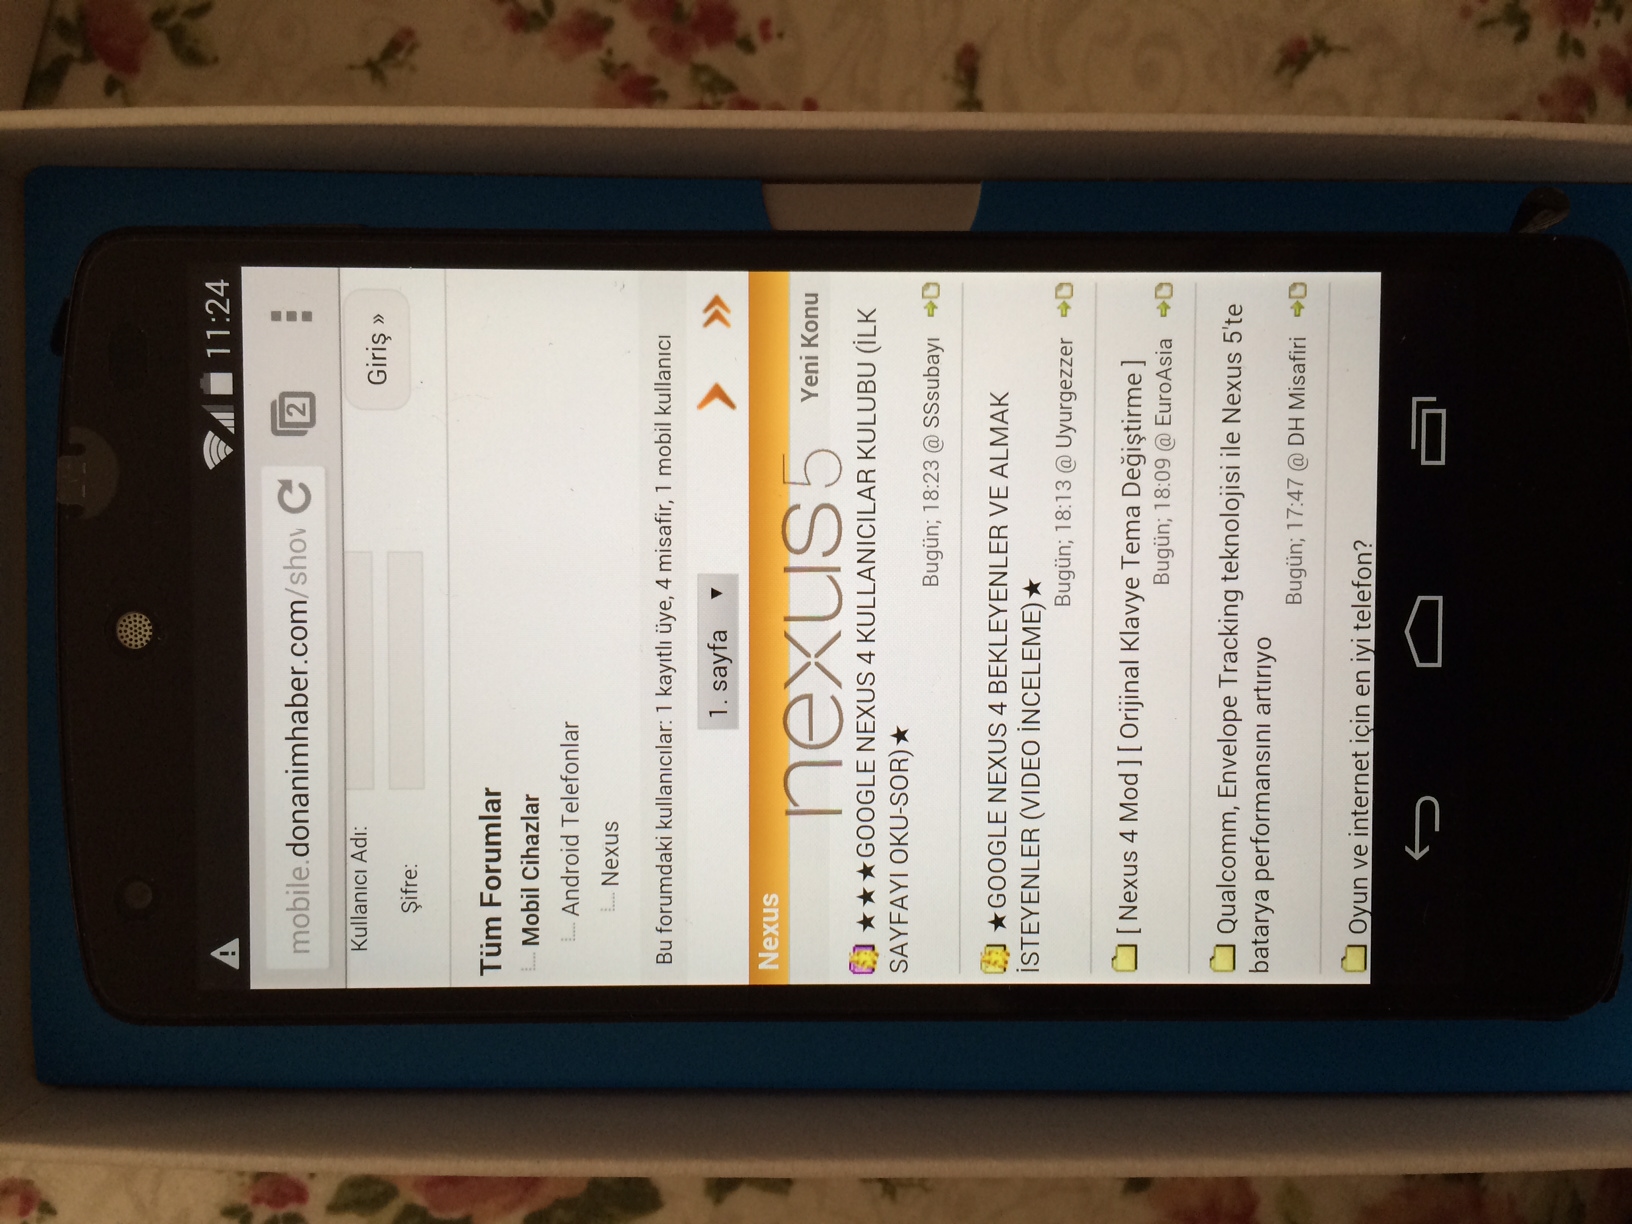  Nexus 5 ile ilgili sorulariniz